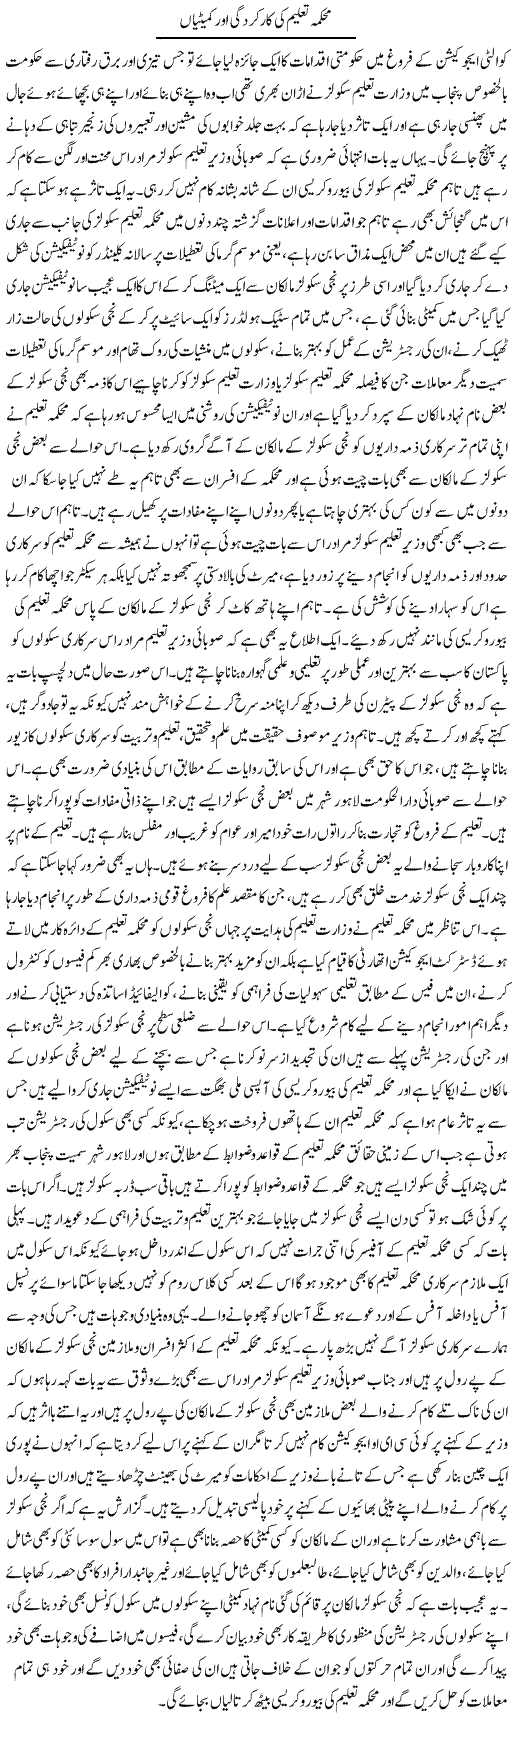 Mehkma Taleem Ki Karkardagi Aur Commetiyan | Yousaf Abbasi | Daily Urdu Columns